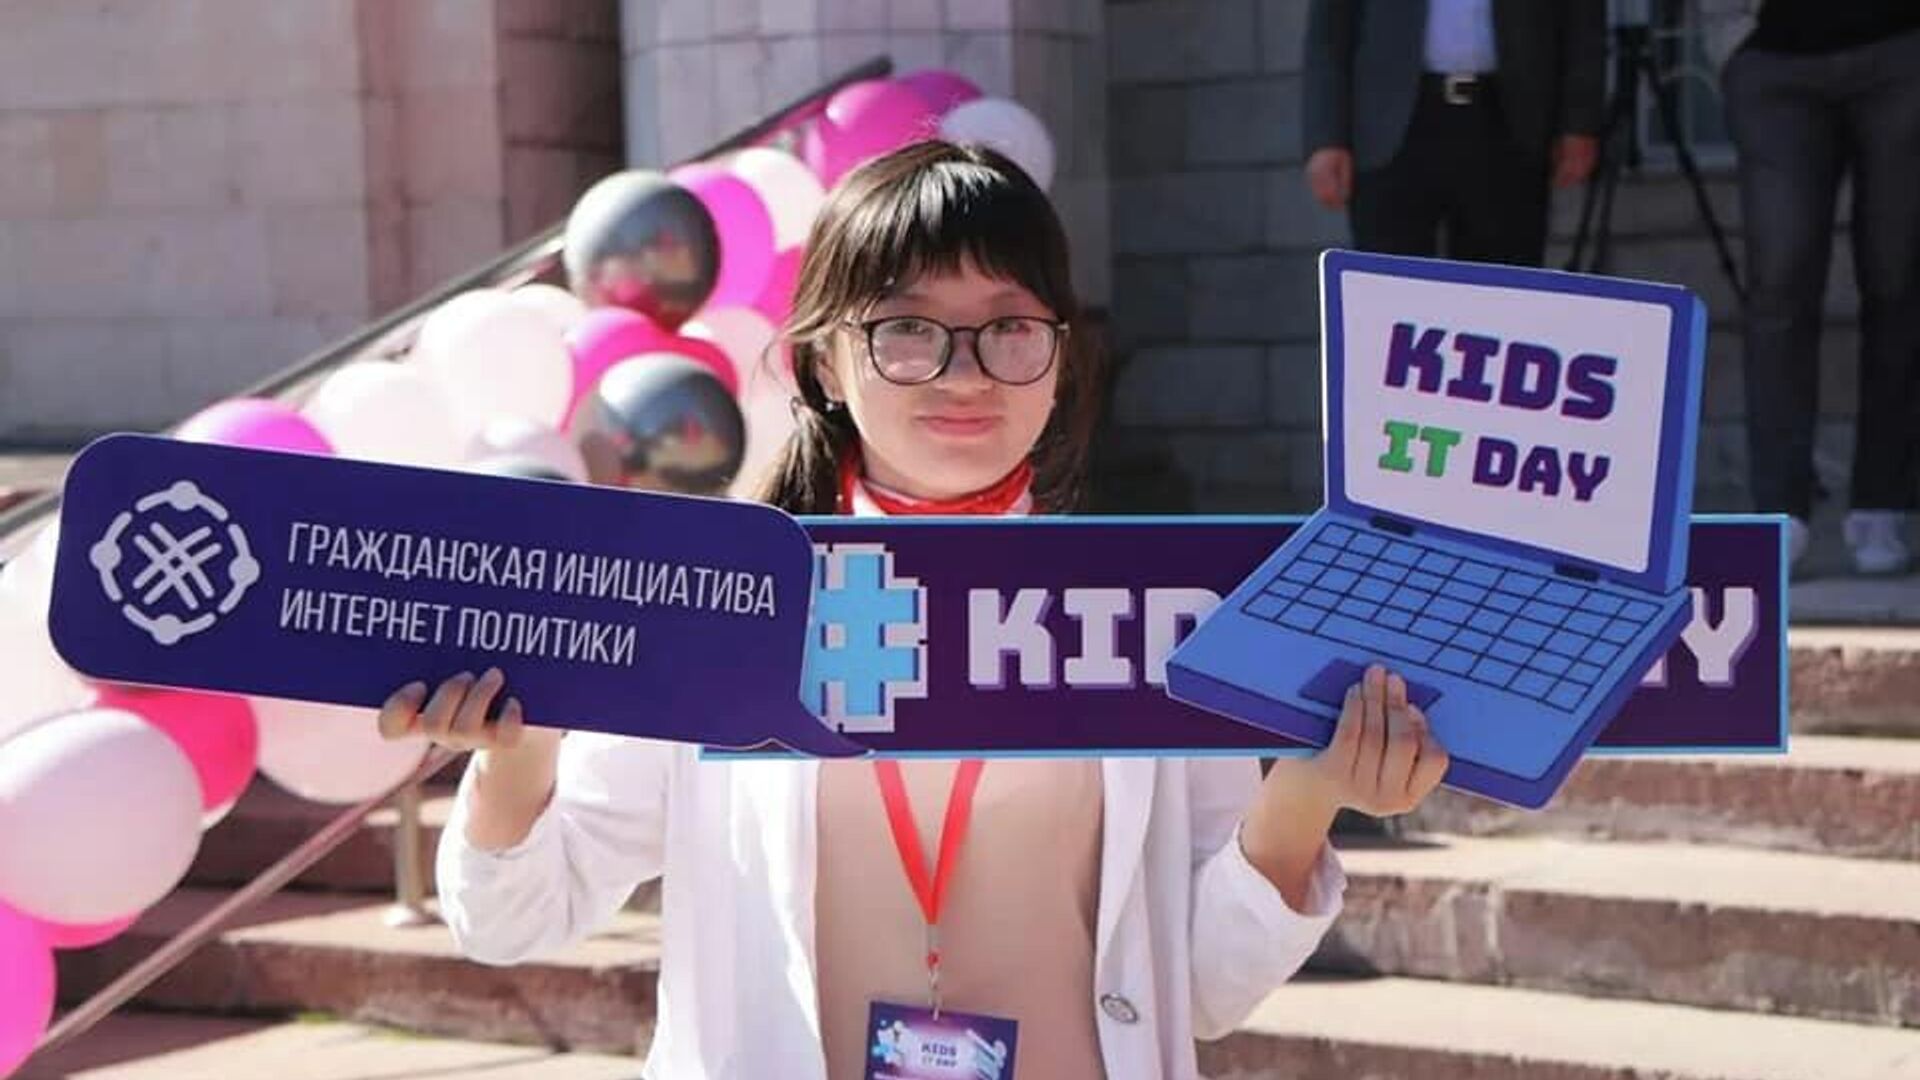 Бишкекте Kids IT Day фестивалы ачылды - Sputnik Кыргызстан, 1920, 01.06.2022